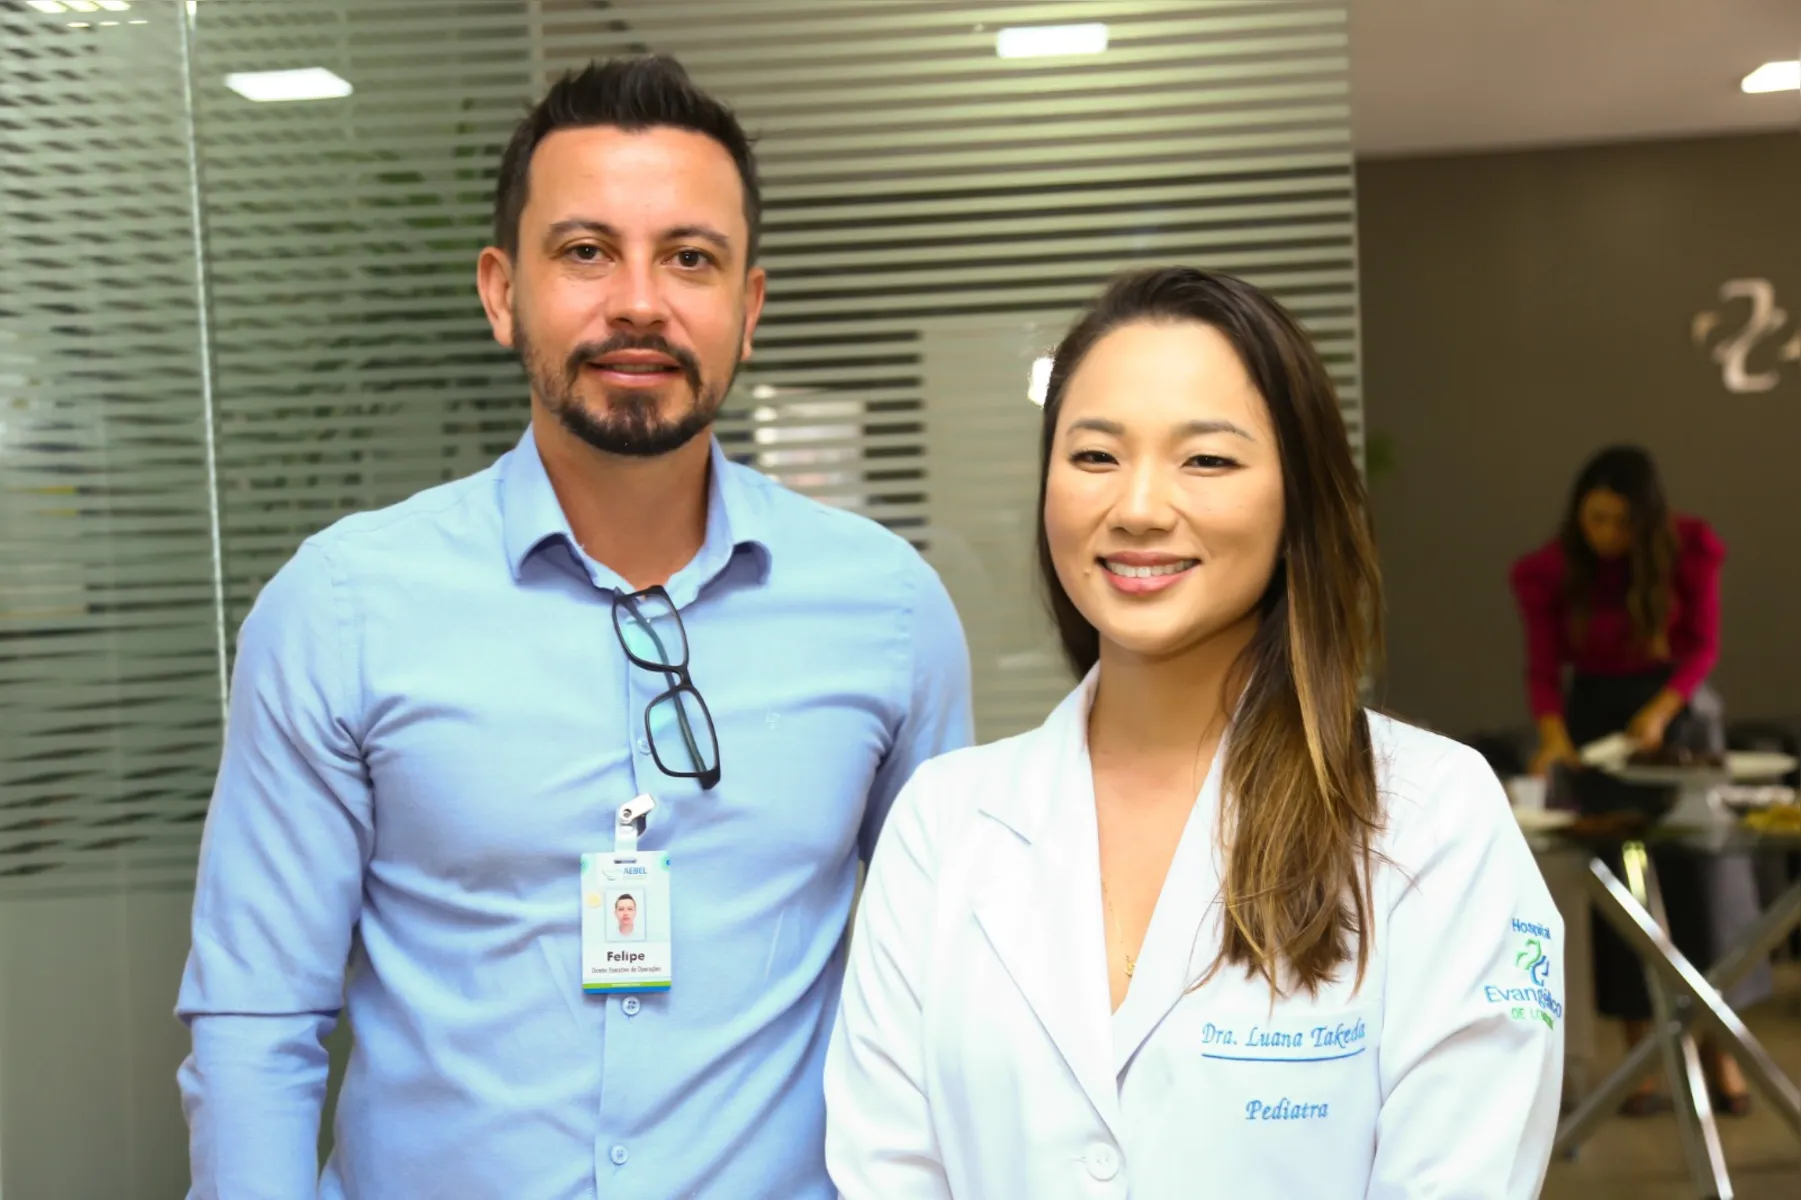 Diretor do Plano de Saúde Hospitalar, Felipe Leme e Dra. Luana Takeda, coordenadora médica do pronto-socorro infantil do Hospital Evangélico de Londrina